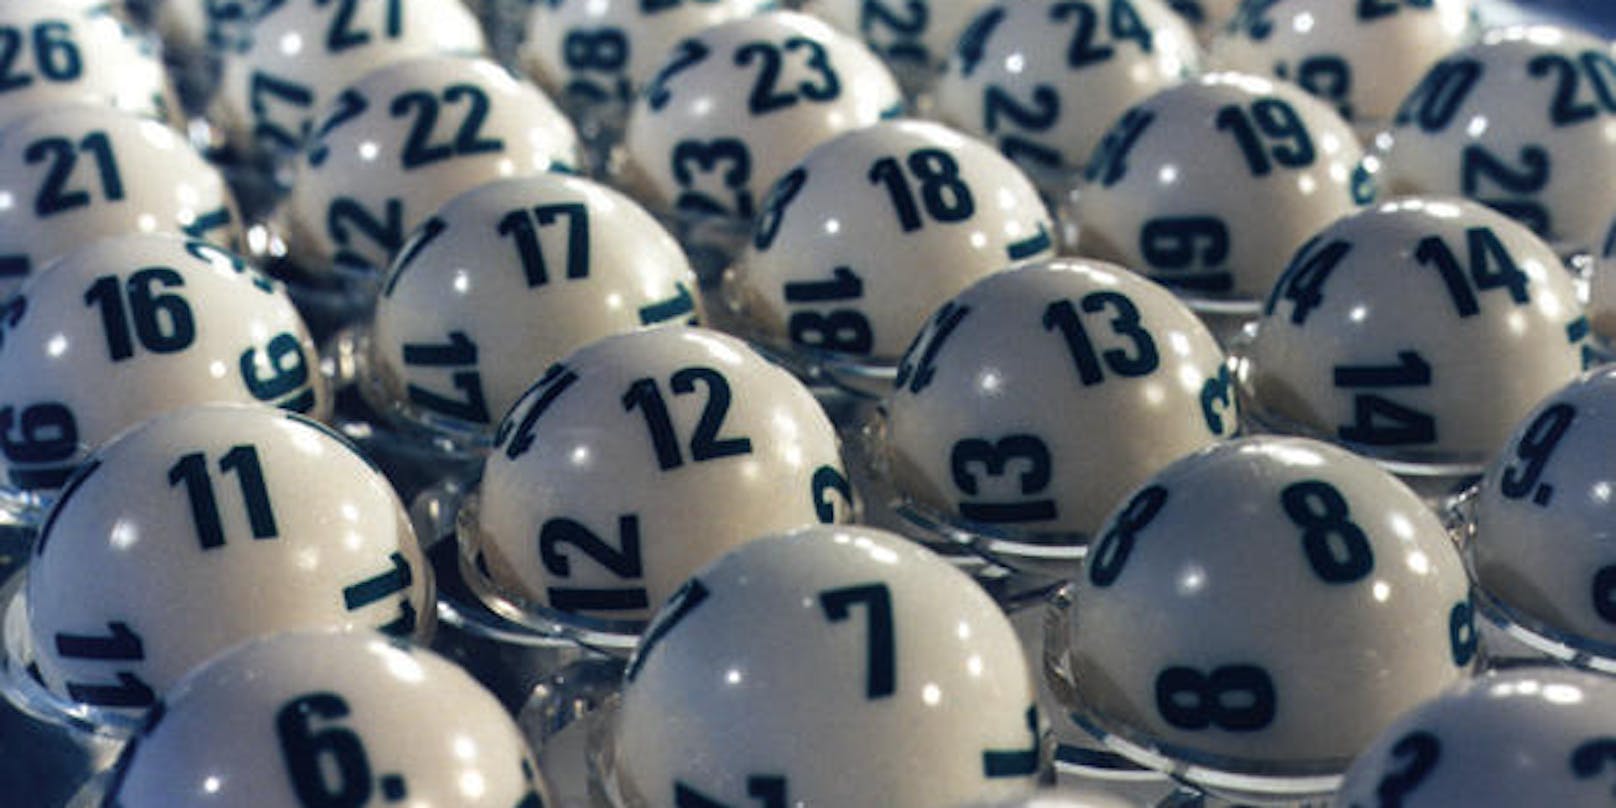 Ein Linzer knackte am Sonntag den Sechsfach-Jackpot, gewann 9,2 Mio. Euro.